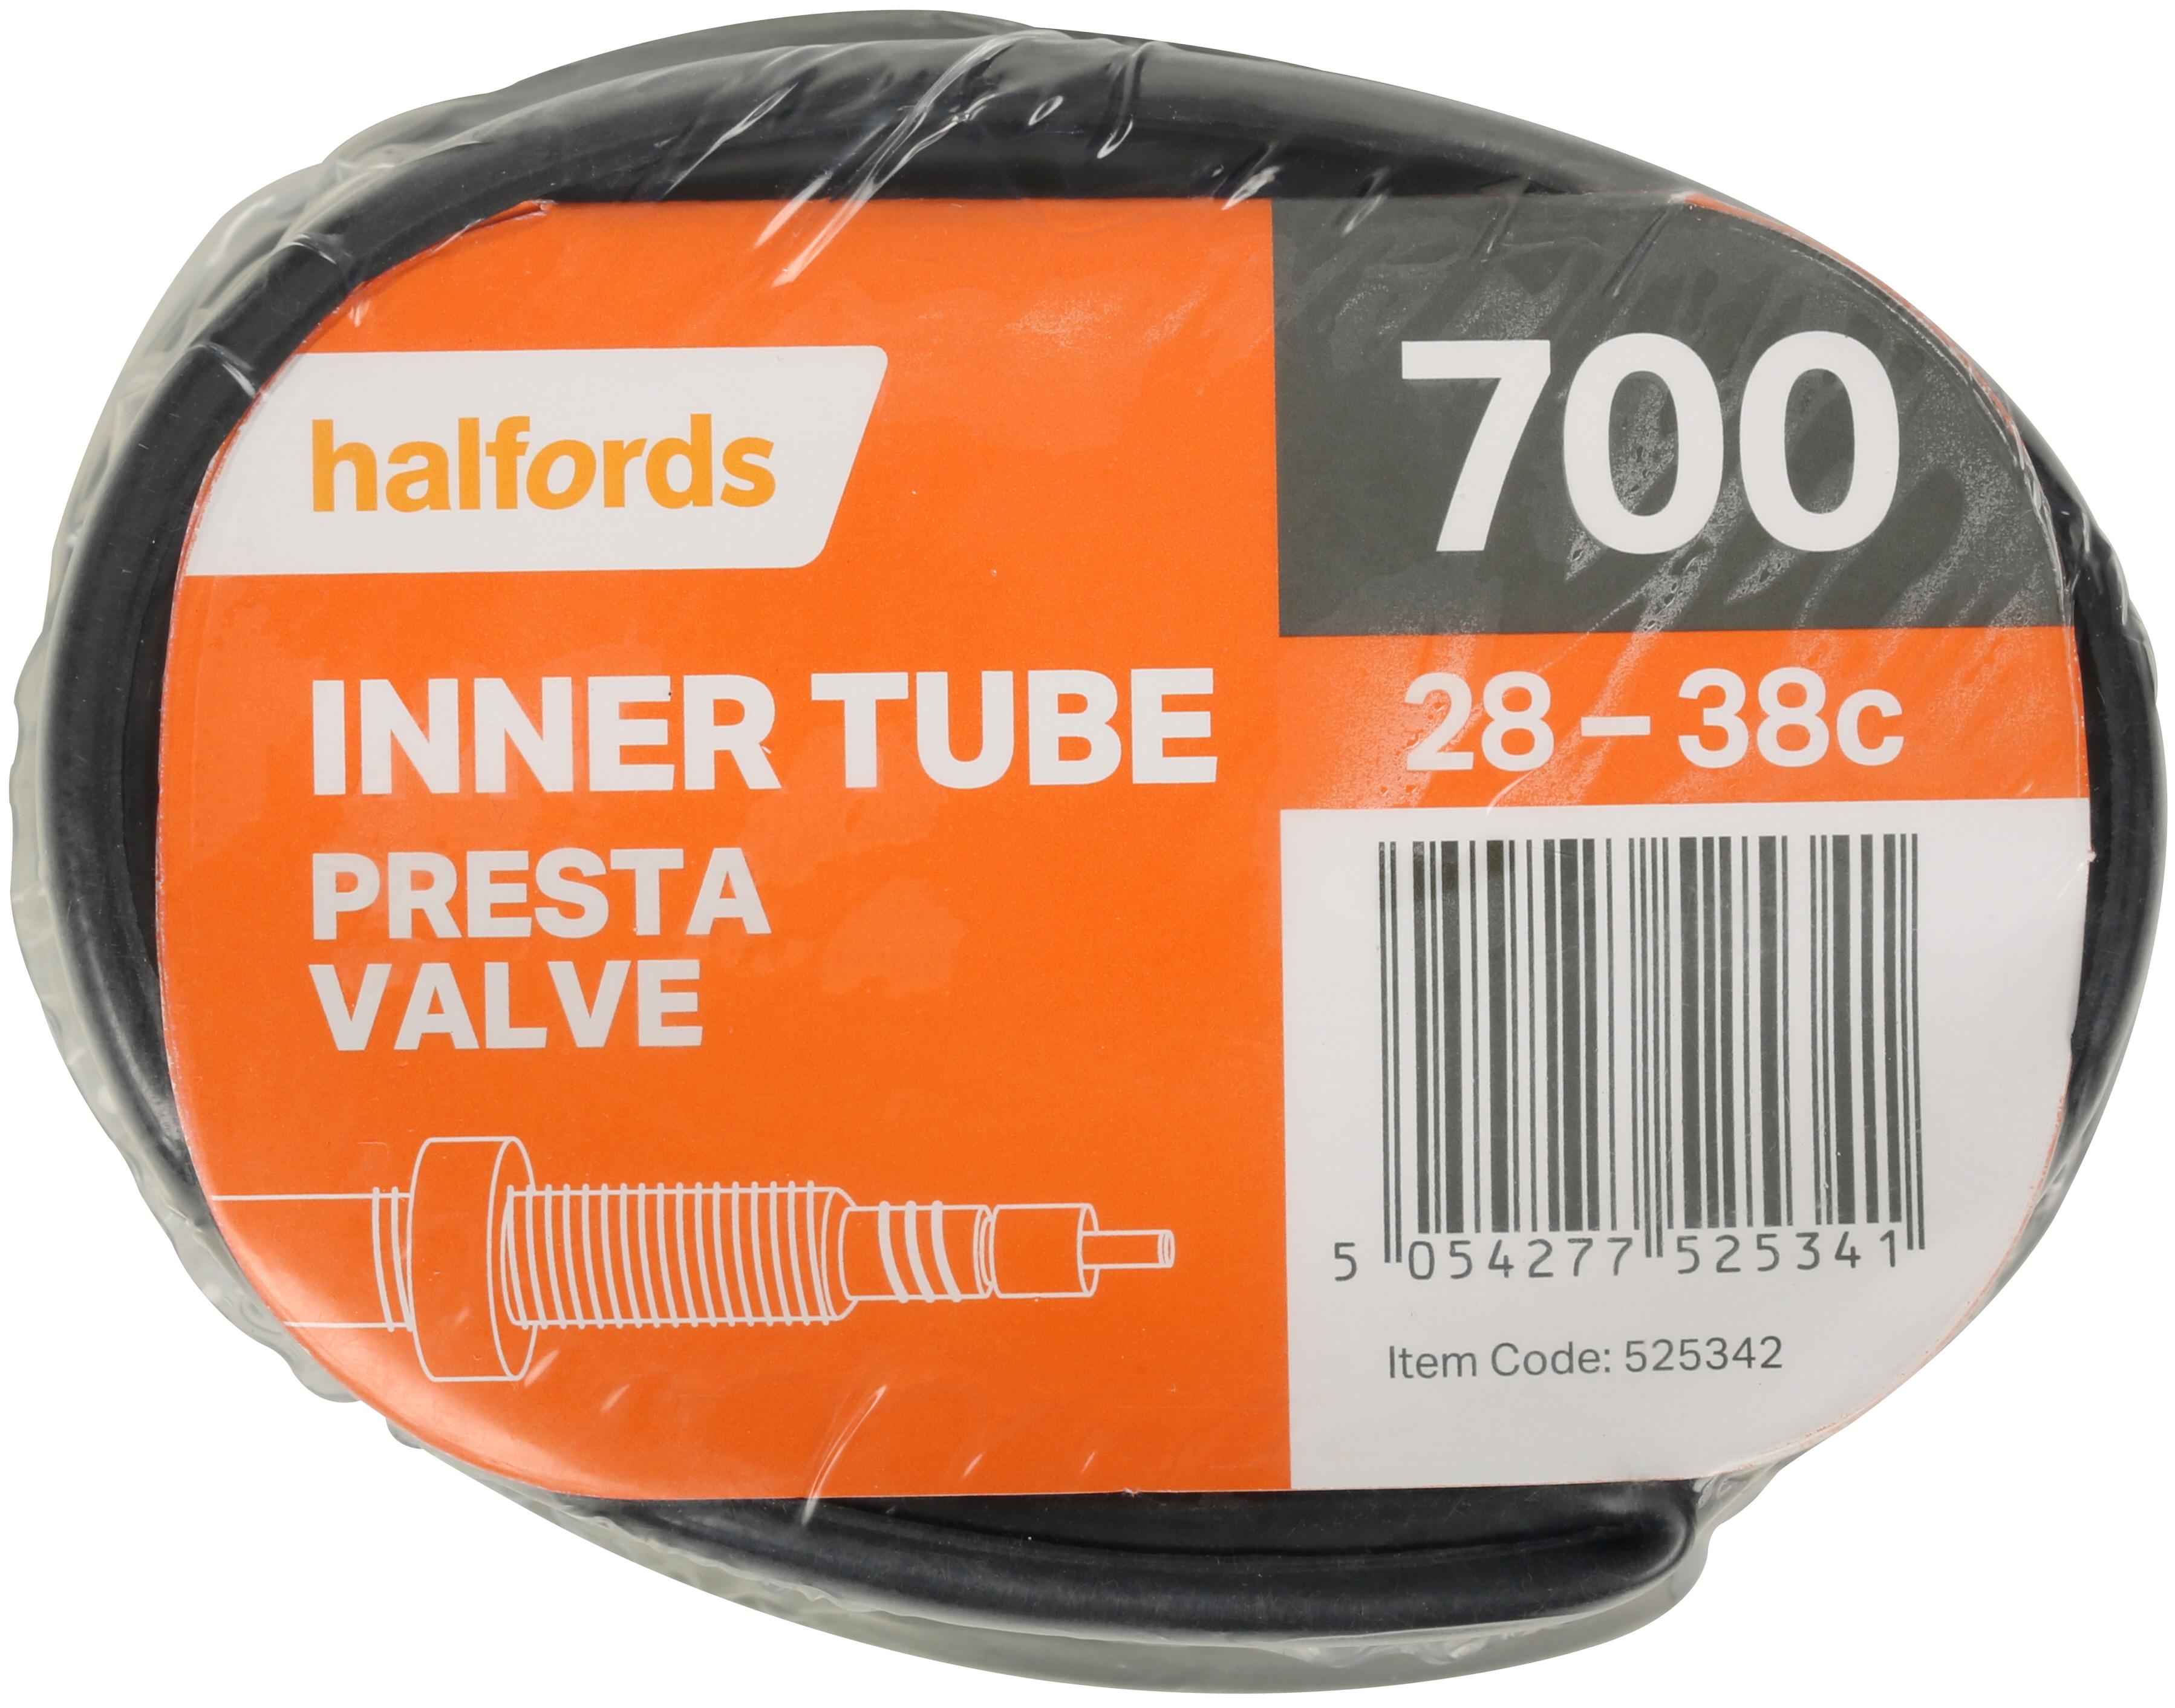 700 inner tube